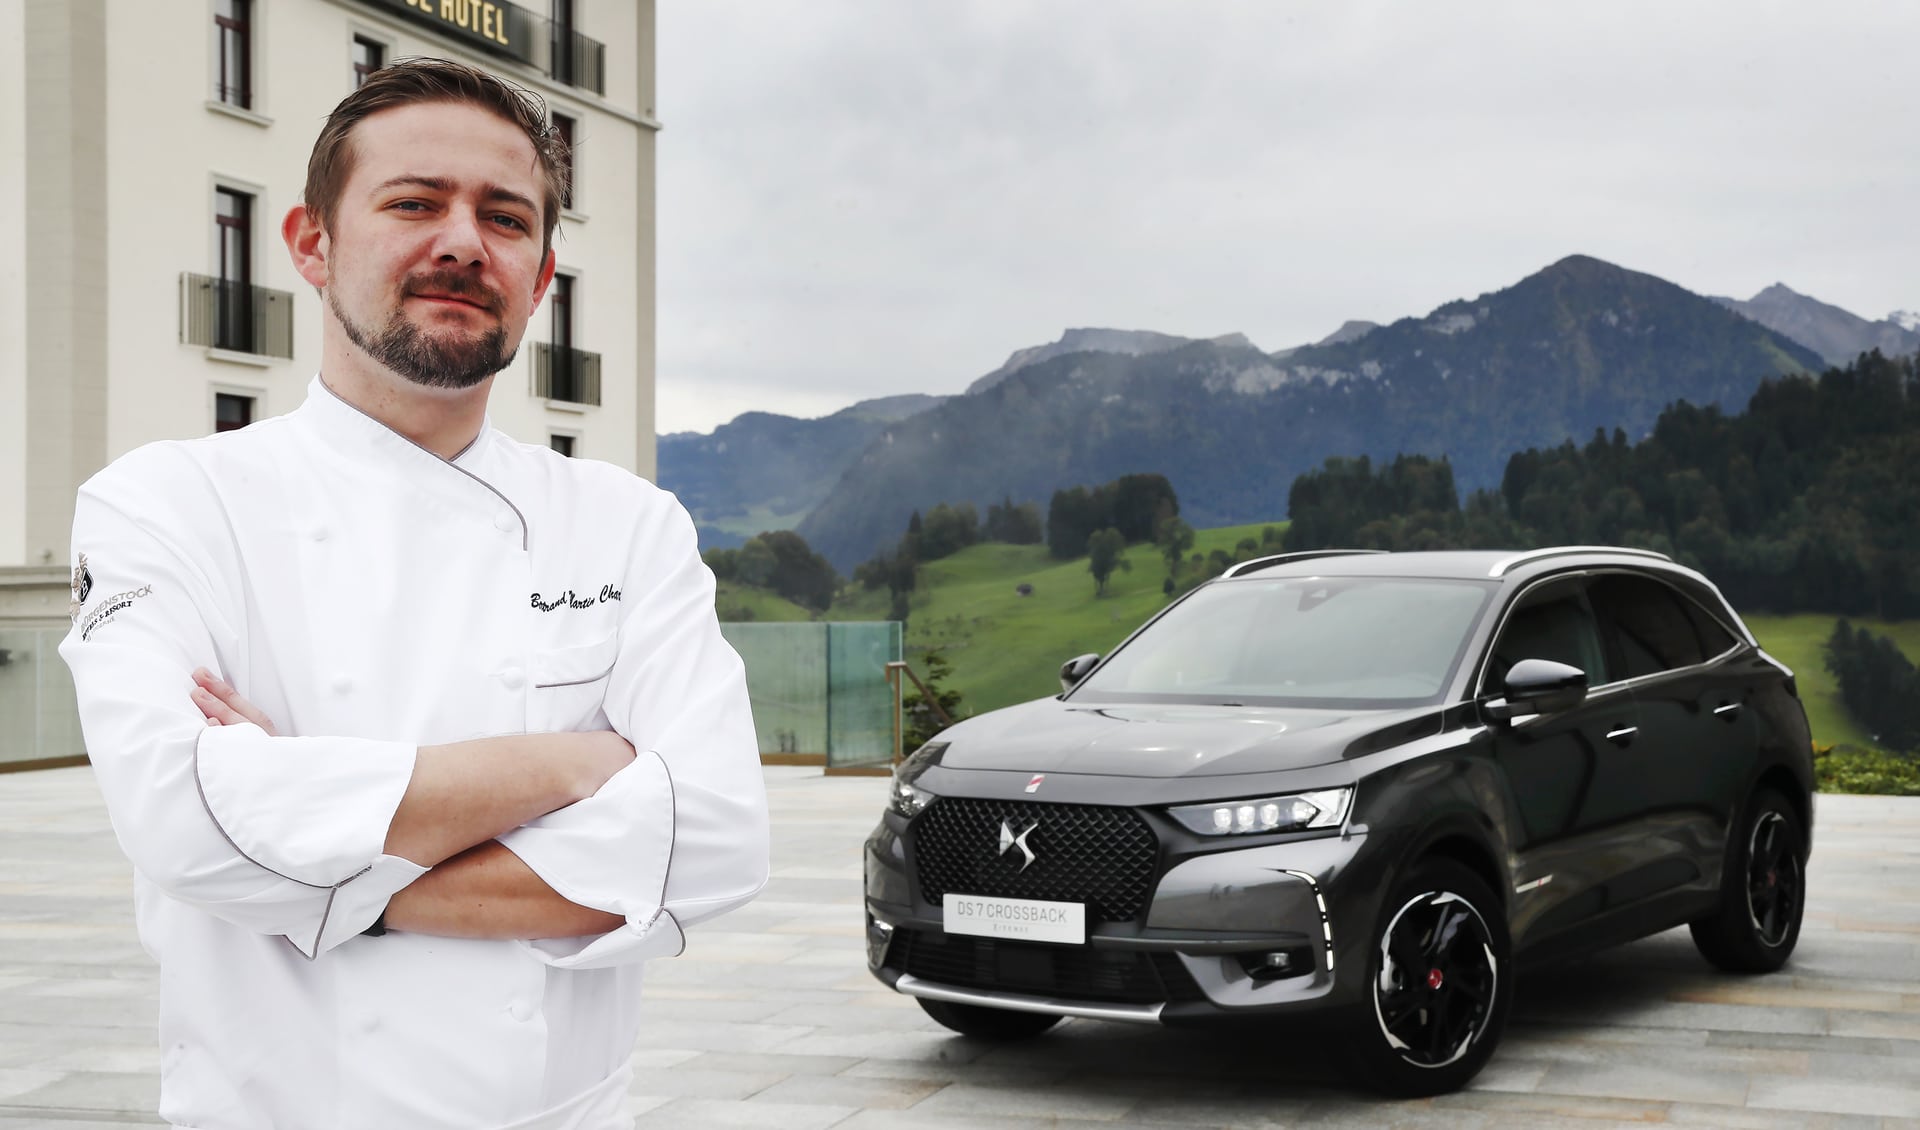 Bertrand Charles cuisine au "RitzCoffier" du Bürgenstock Resort de Lucerne. Il fait partie des grands talents du pays.